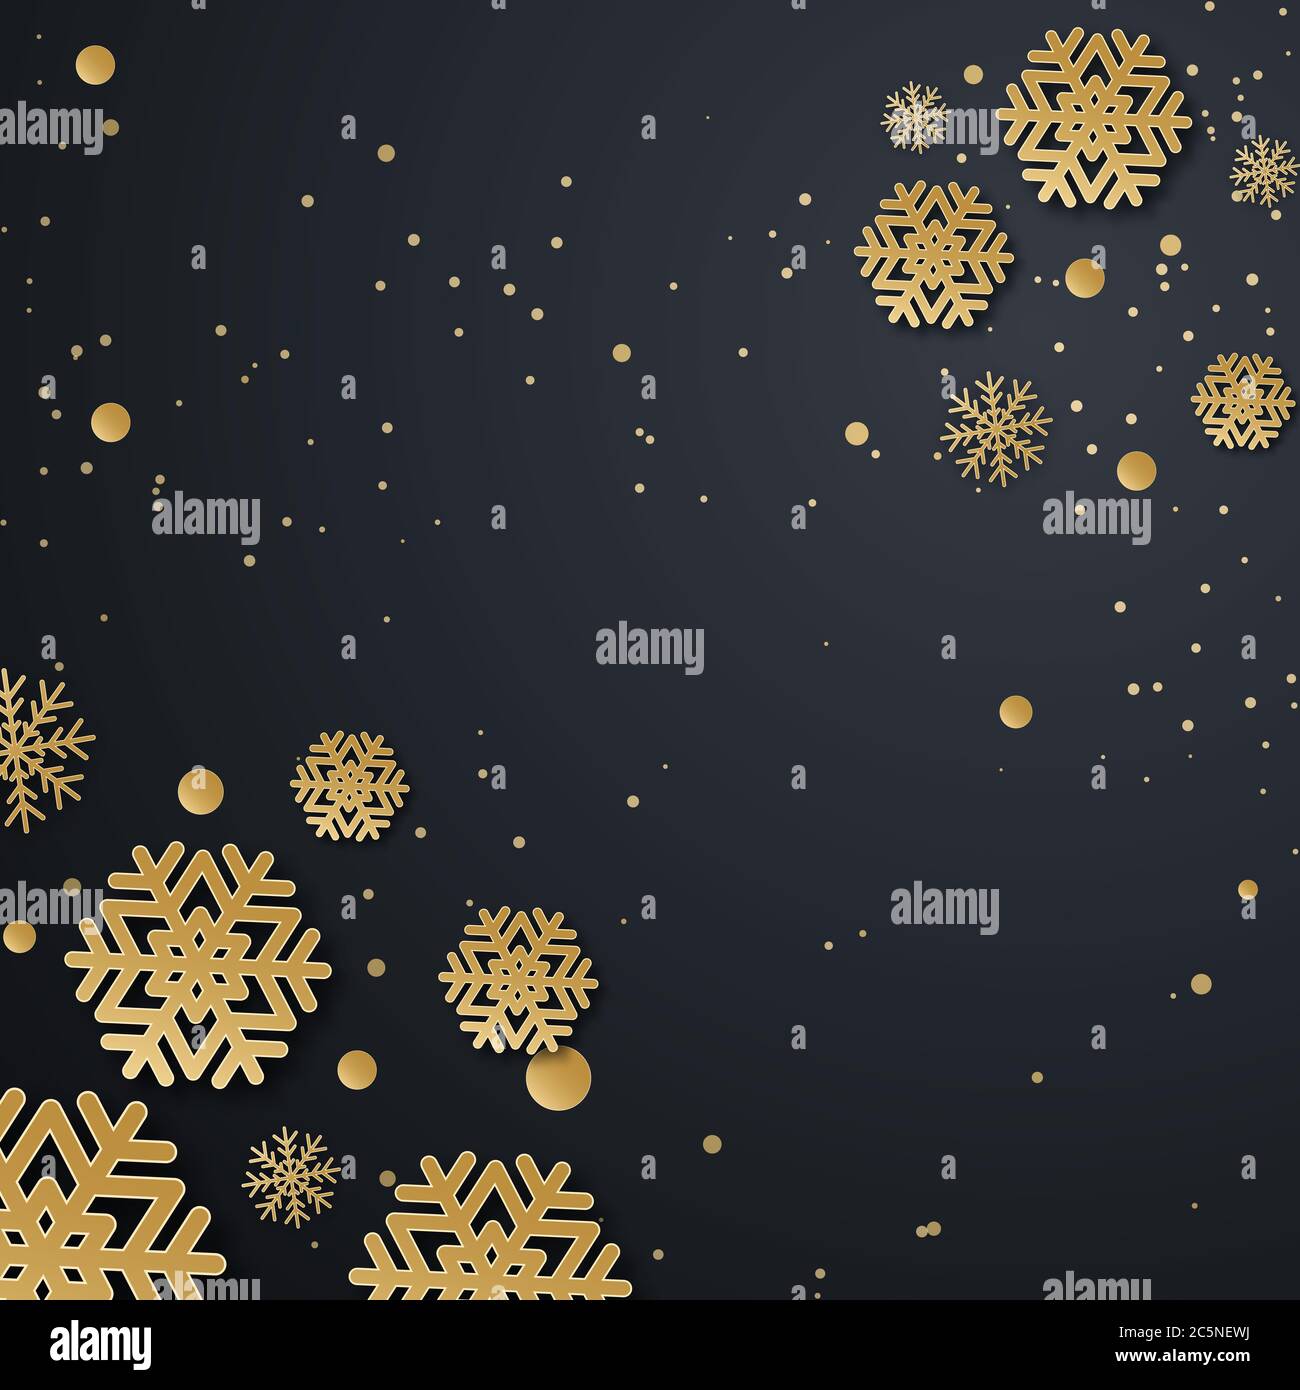 Motif Noël avec motif flocons de neige en papier. Arrière-plan sombre raffiné avec texte de message d'accueil doré. Illustration vectorielle Banque D'Images